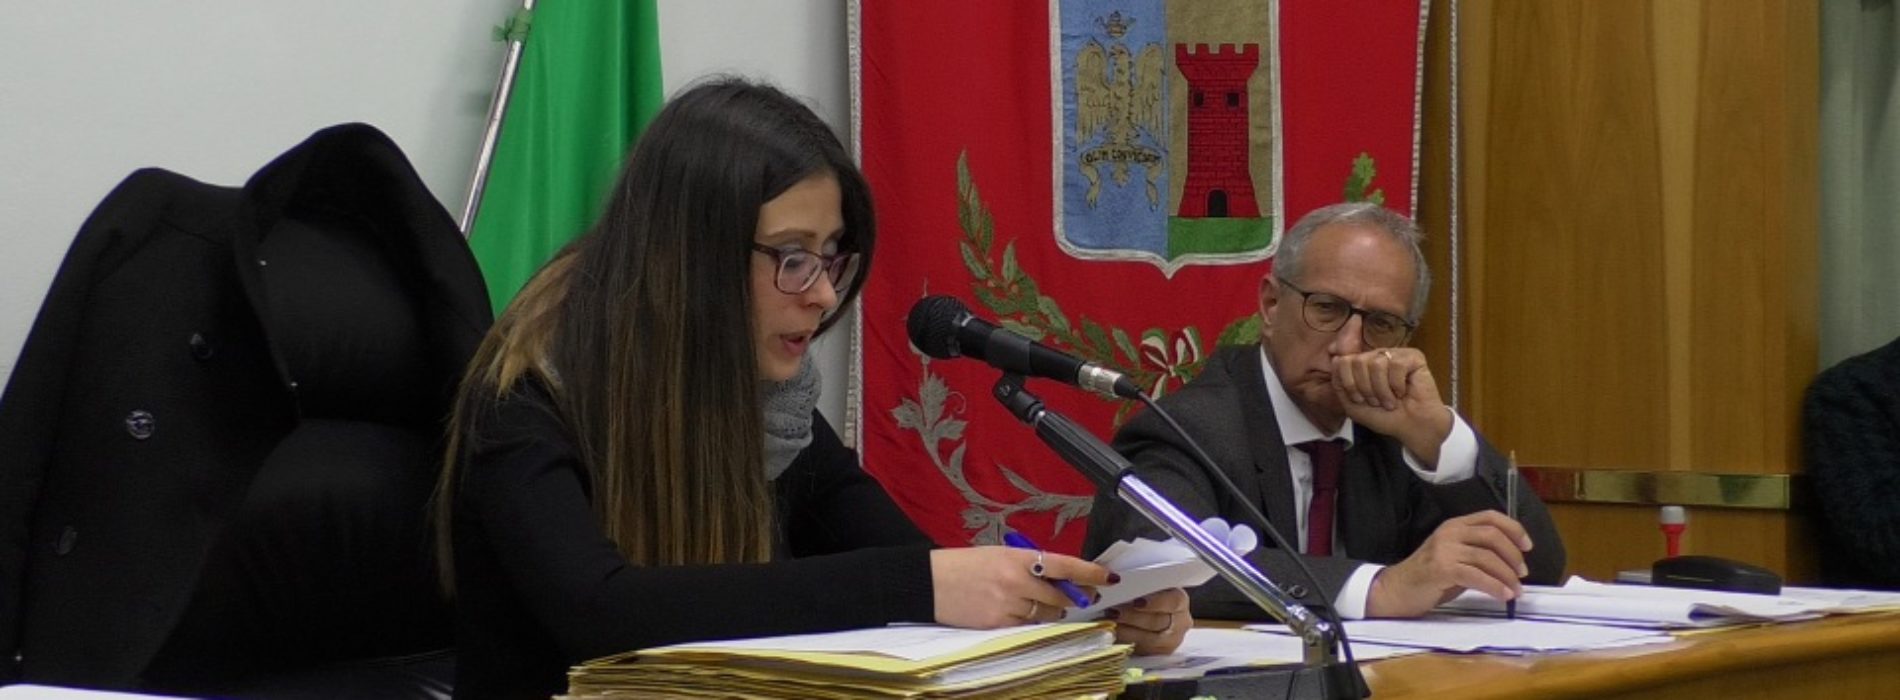 Barrafranca. Si dimette Katia Baglio vicepresidente del consiglio comunale